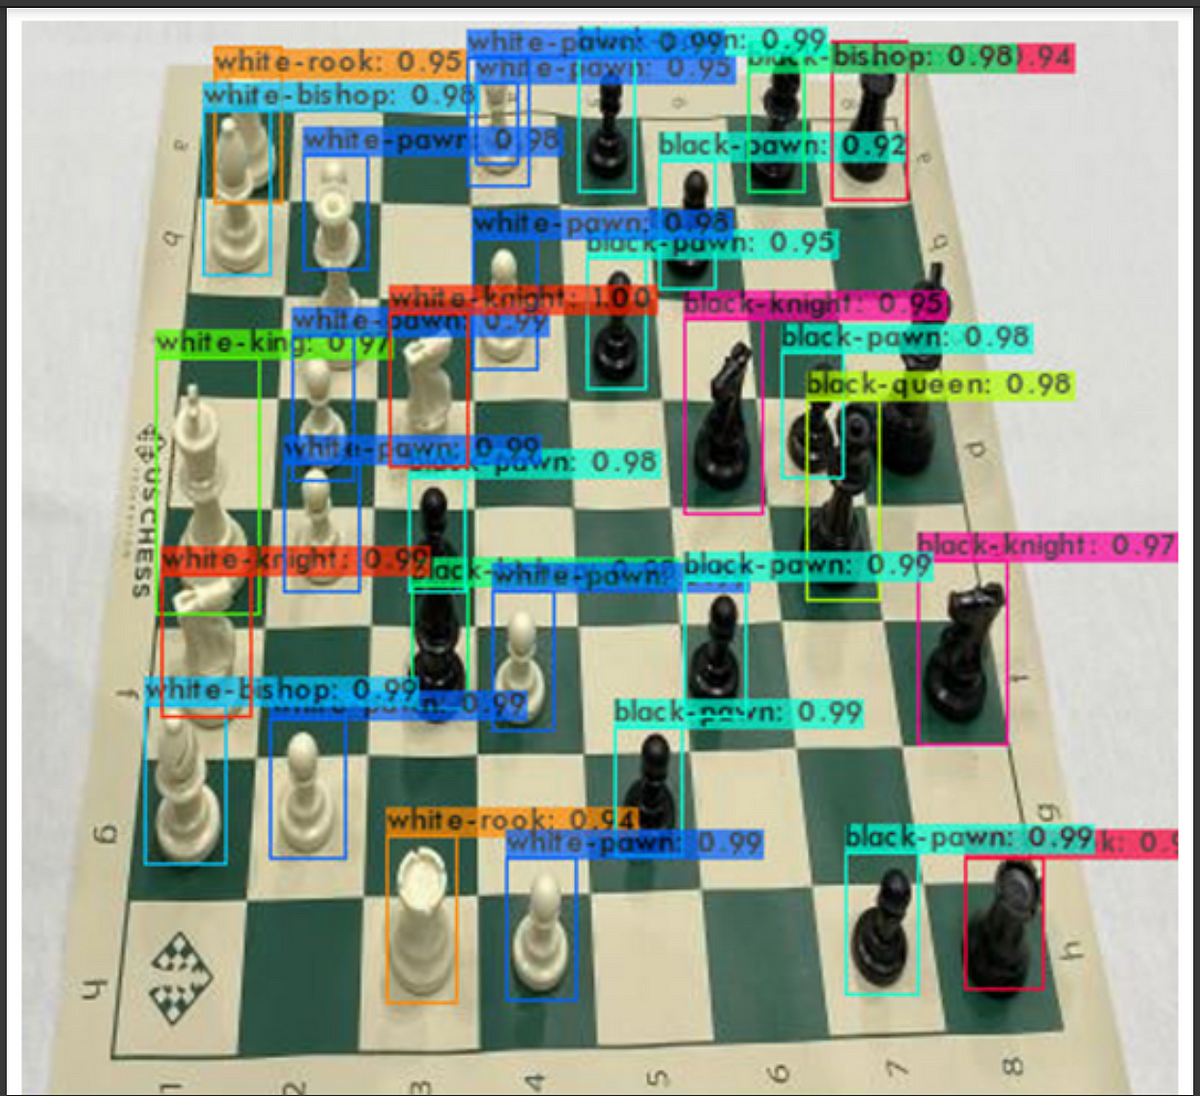 Chess Mates - Macintosh Repository